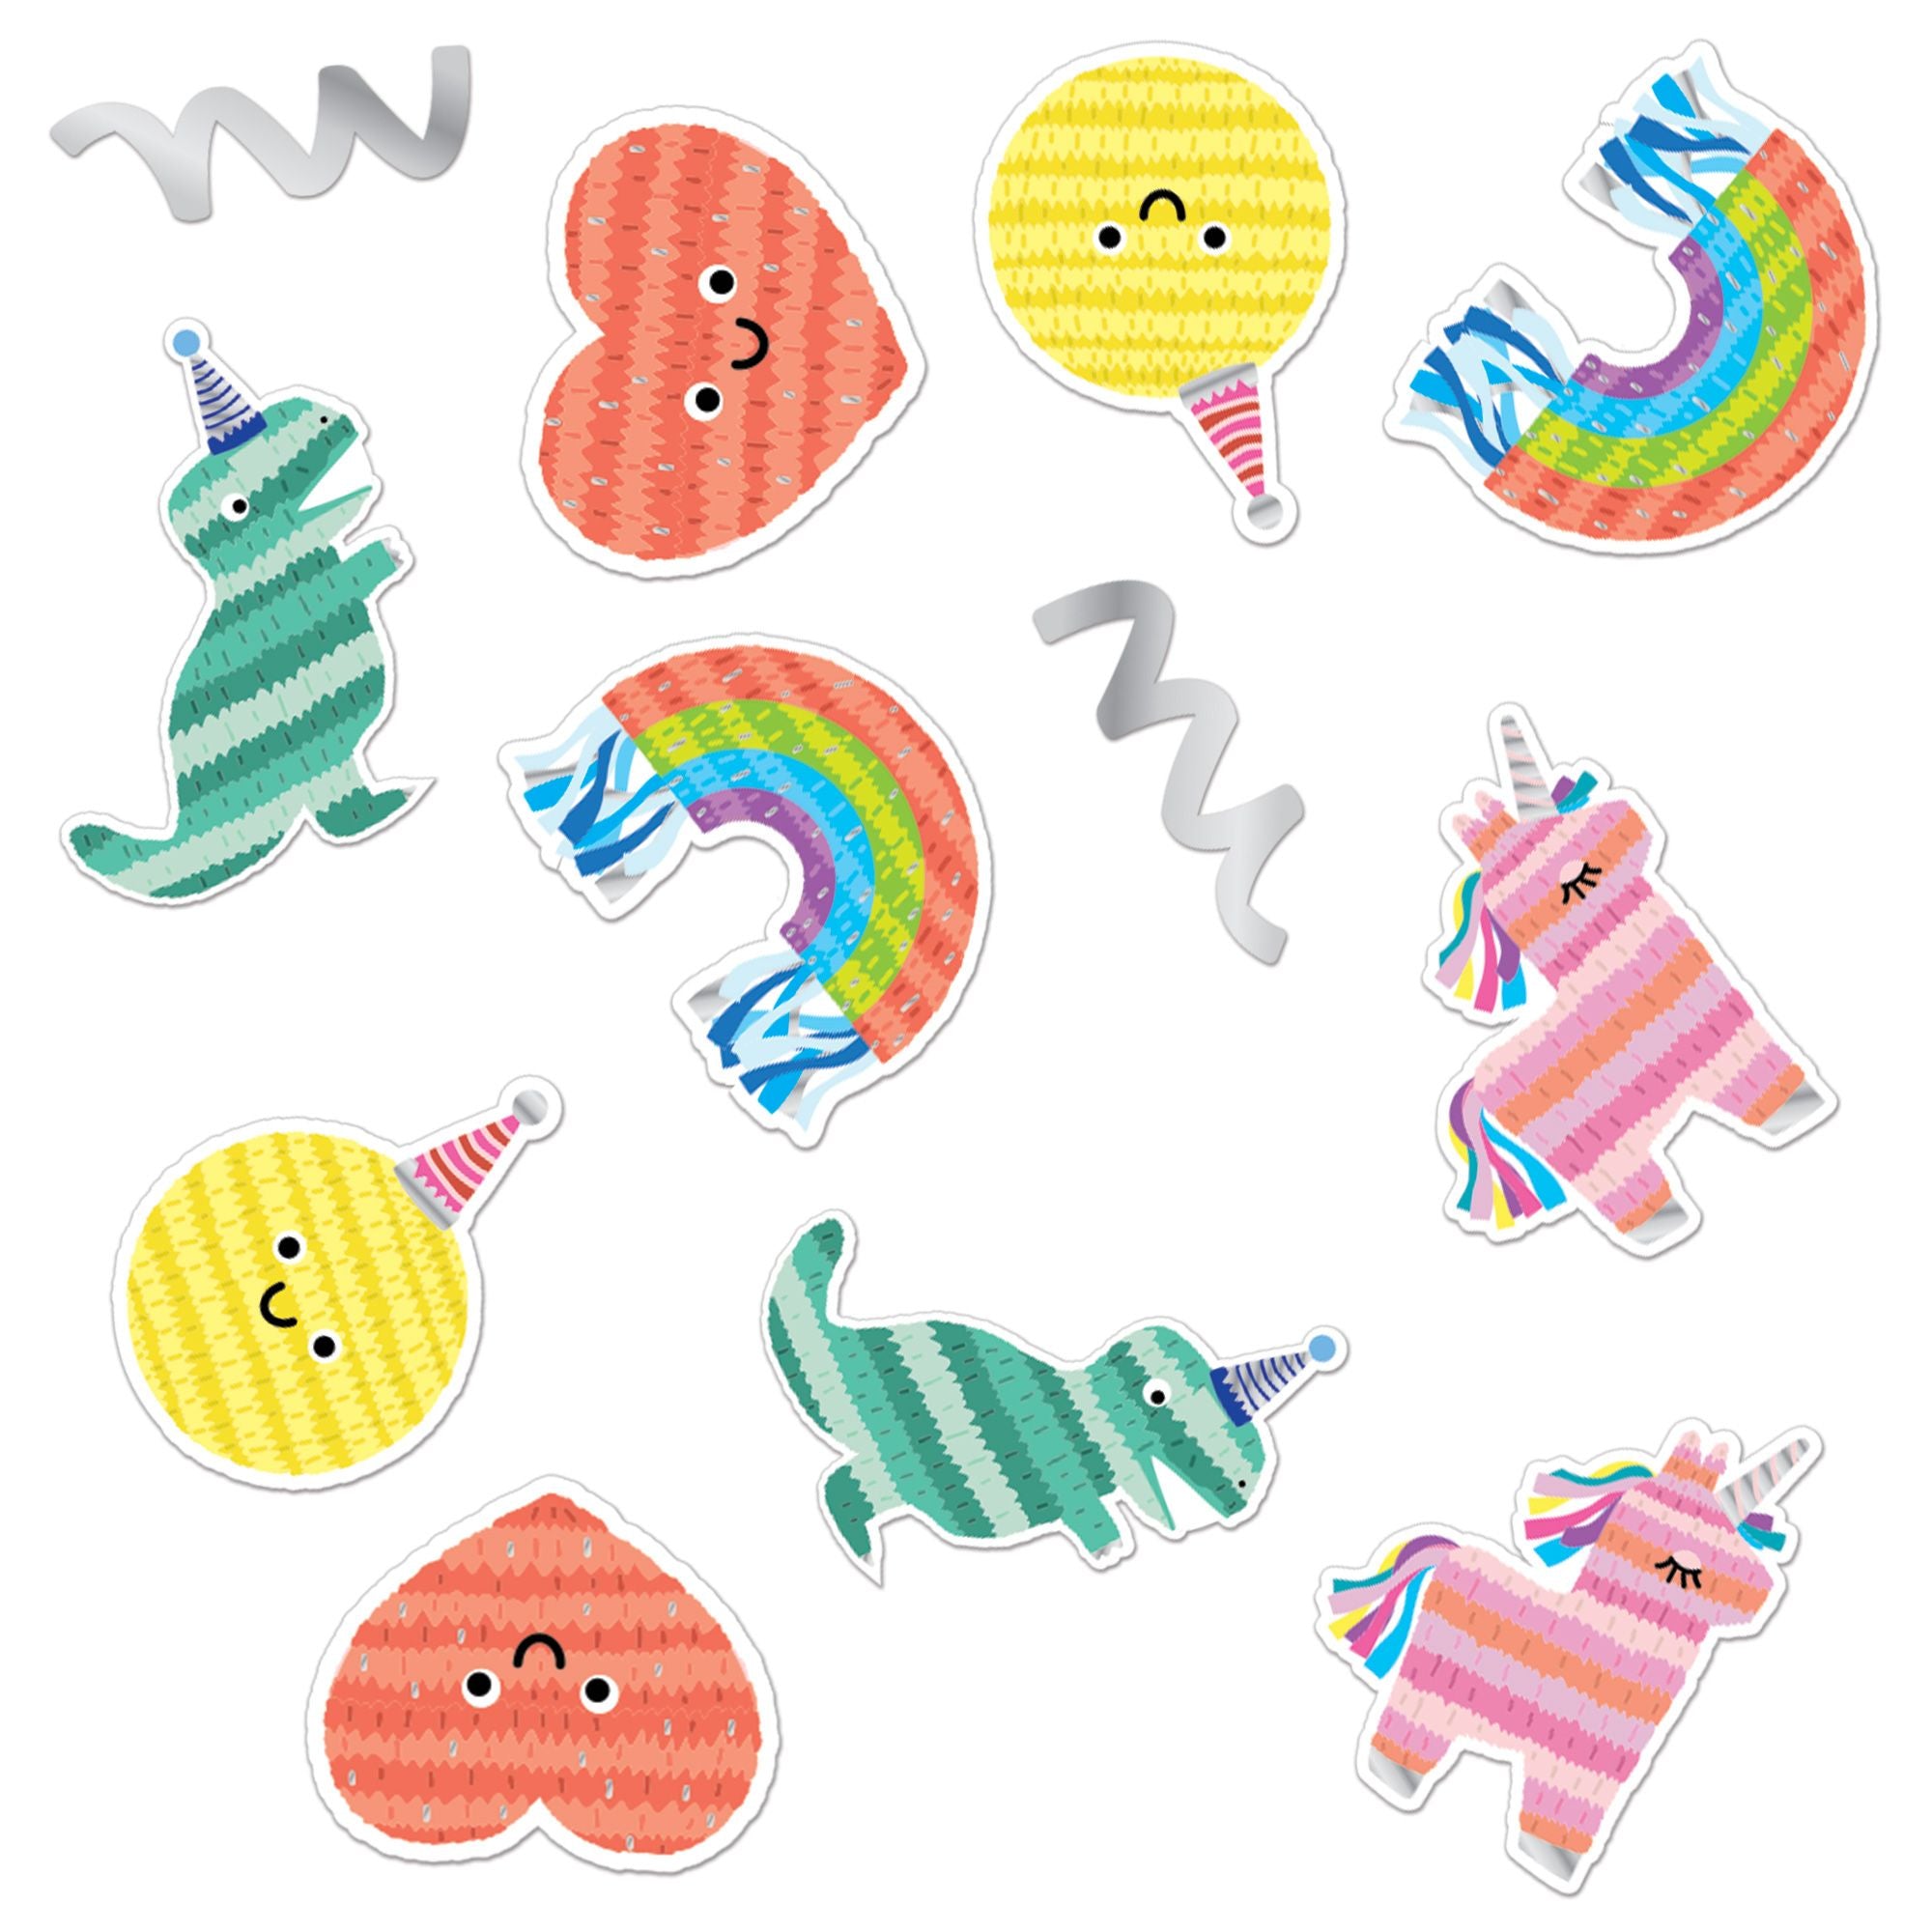 Piñata Party Sticker Confetti